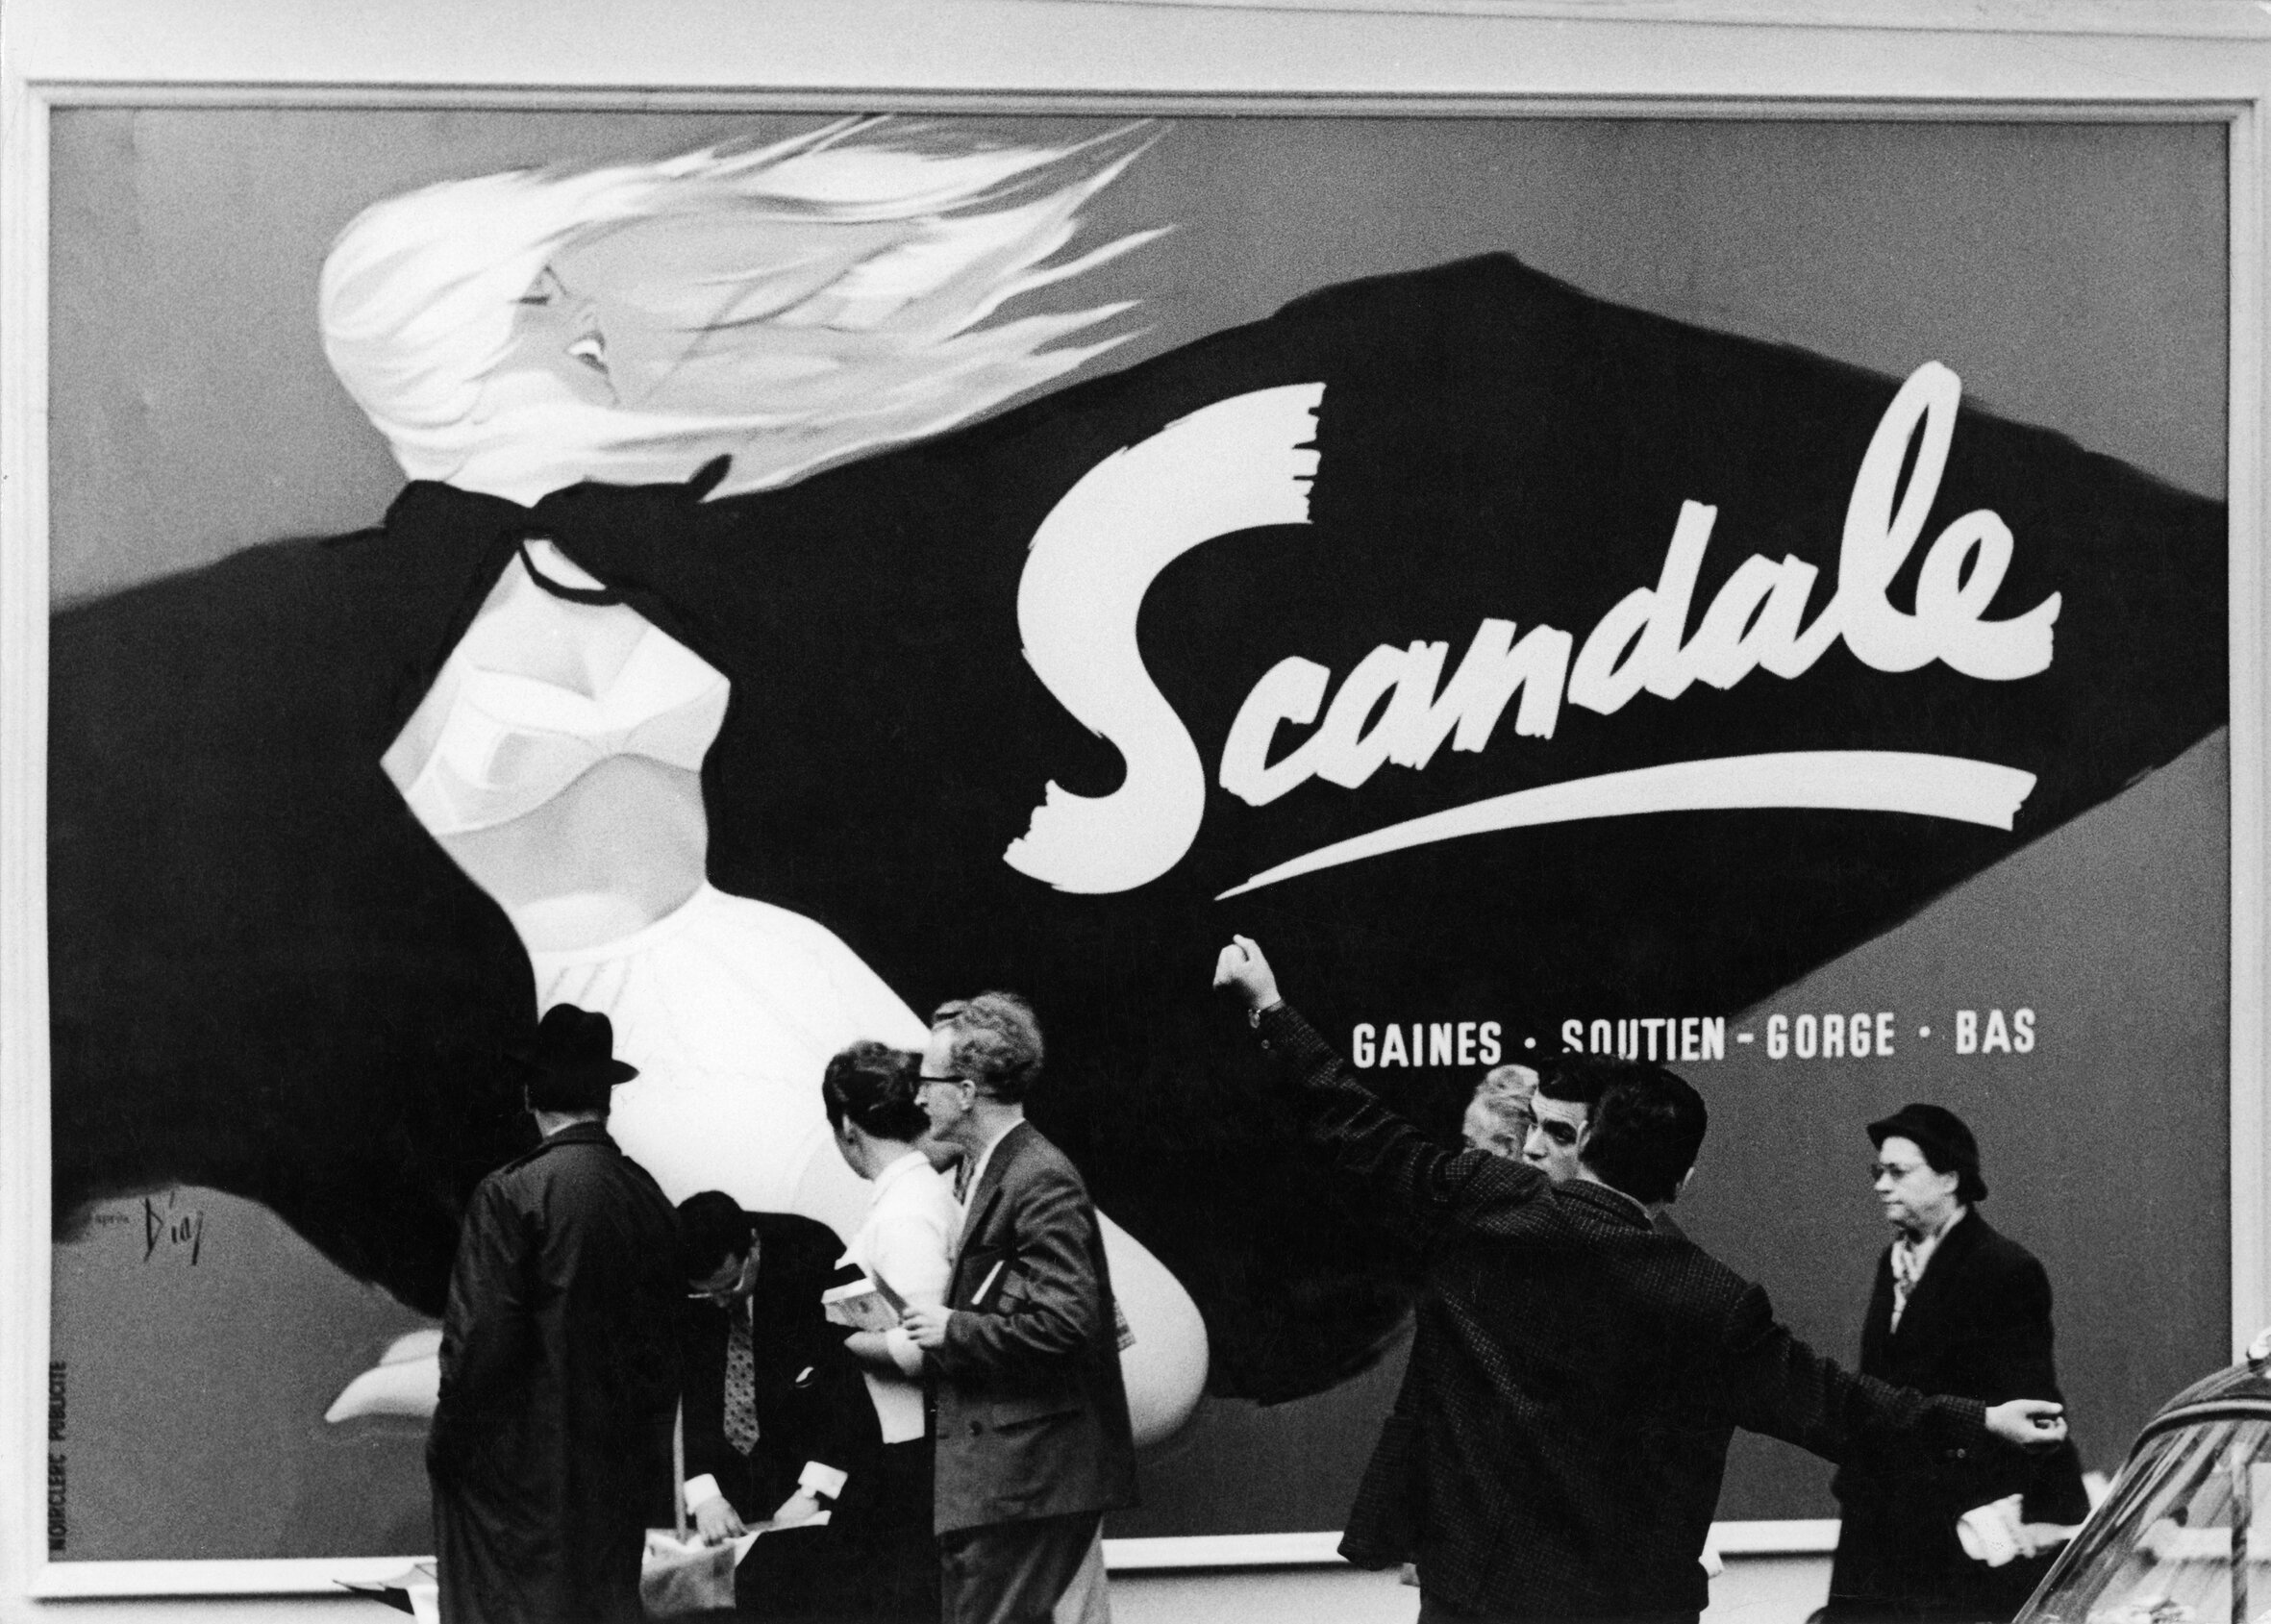 Scandale, Paris ca. 1960